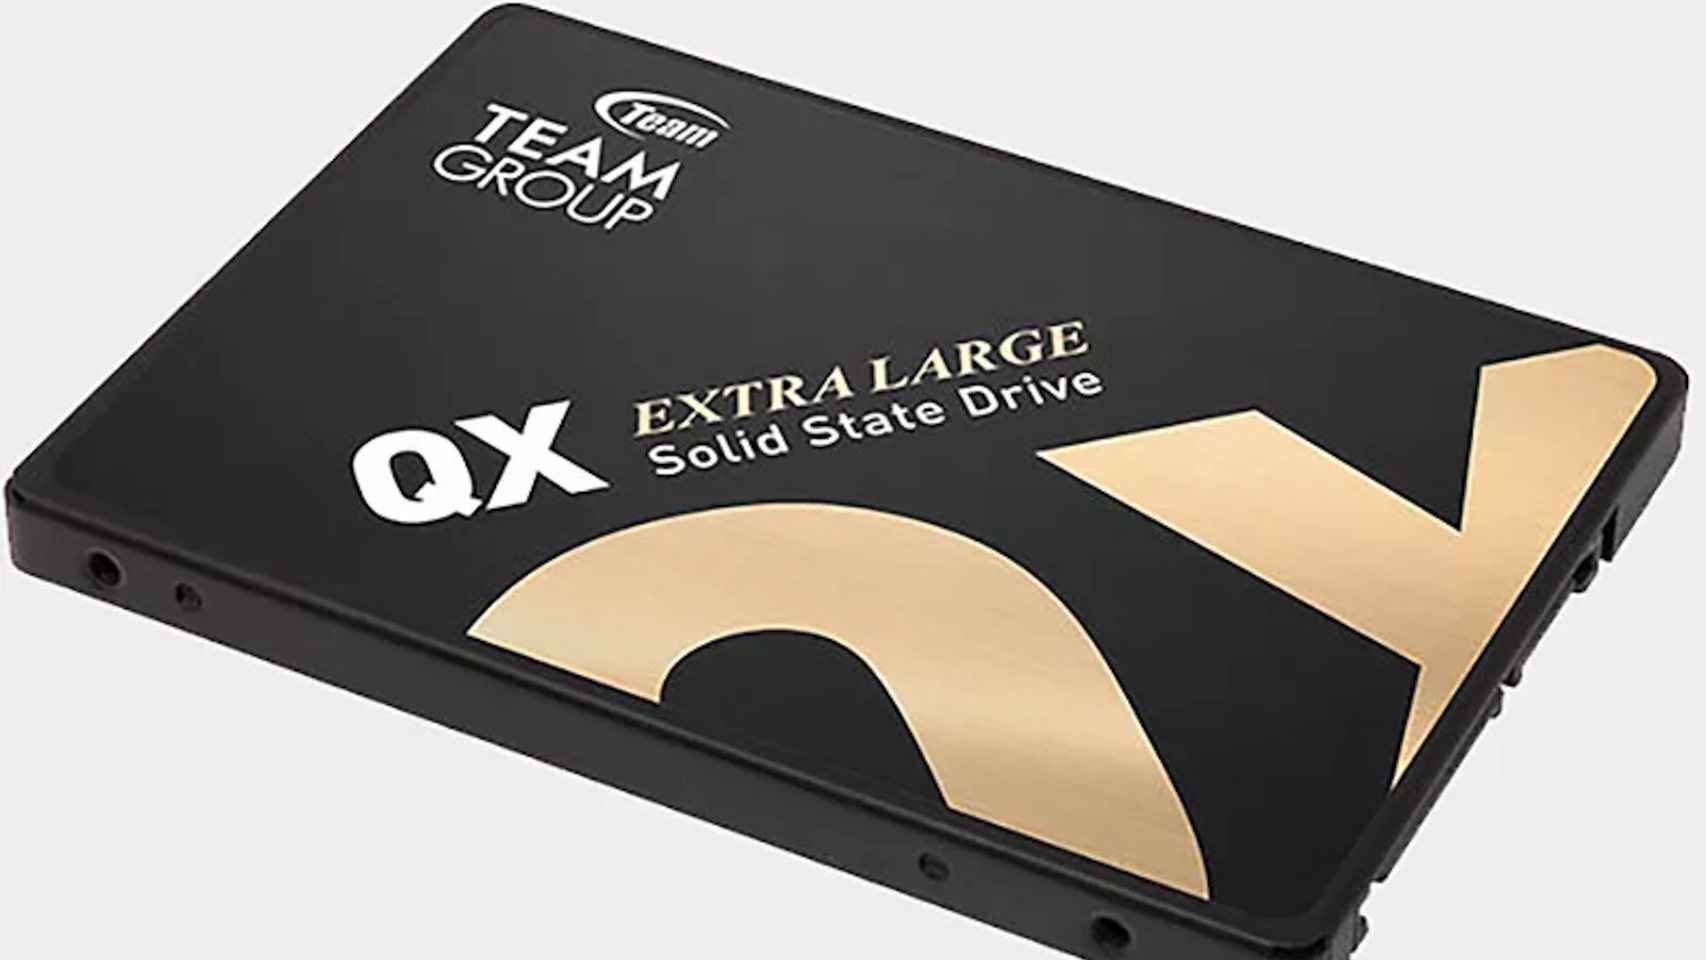 Serie de discos SSD externos portátiles】recomendada│TEAMGROUP